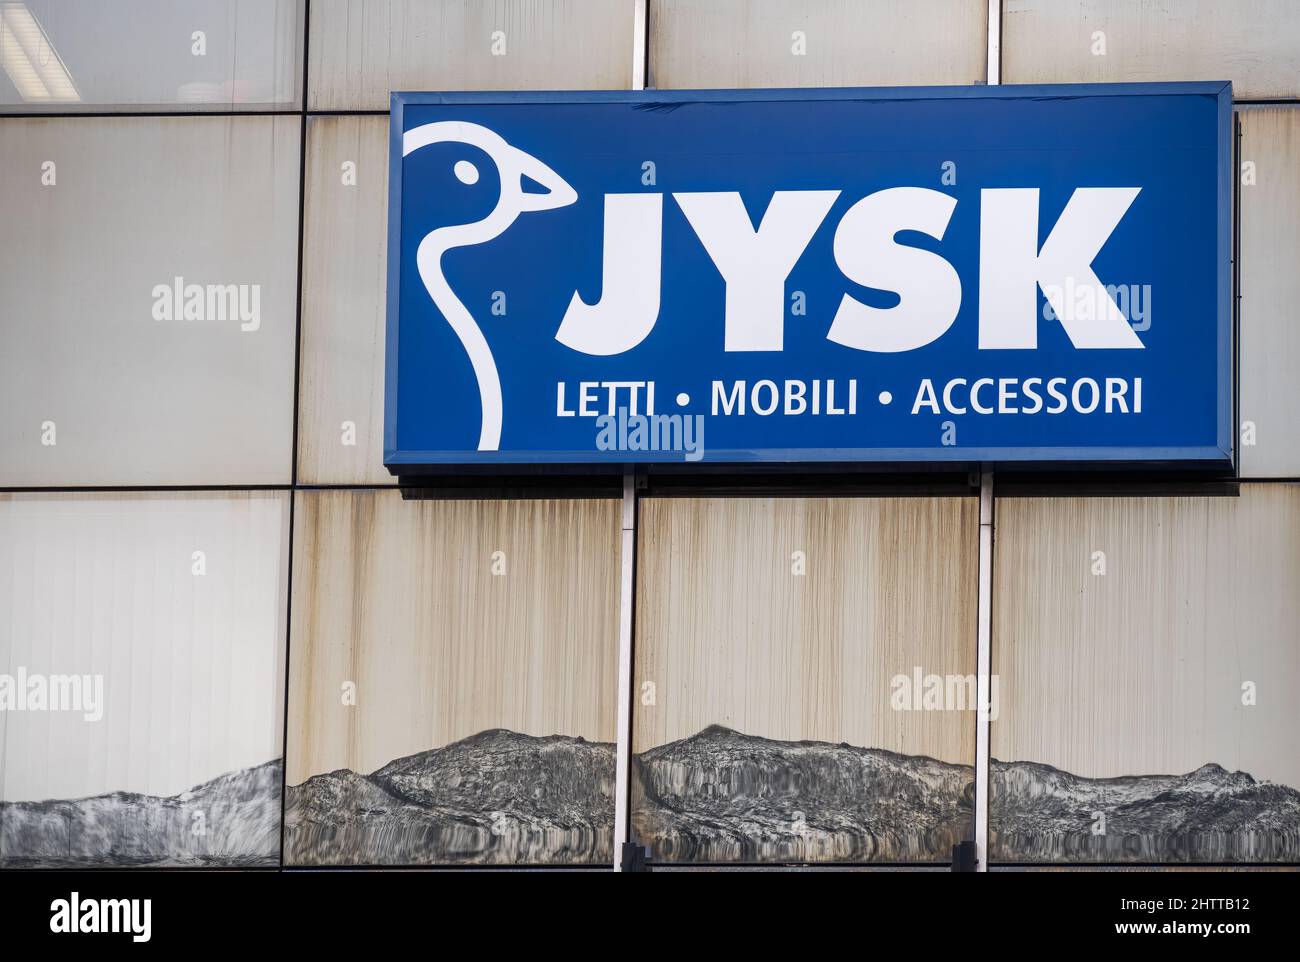 Locarno, Svizzera - 29 dicembre 2021: Un segno per mobili gigante Jysk sulla facciata di vetro con montagne sotto il segno come un riflesso nel wal Foto Stock